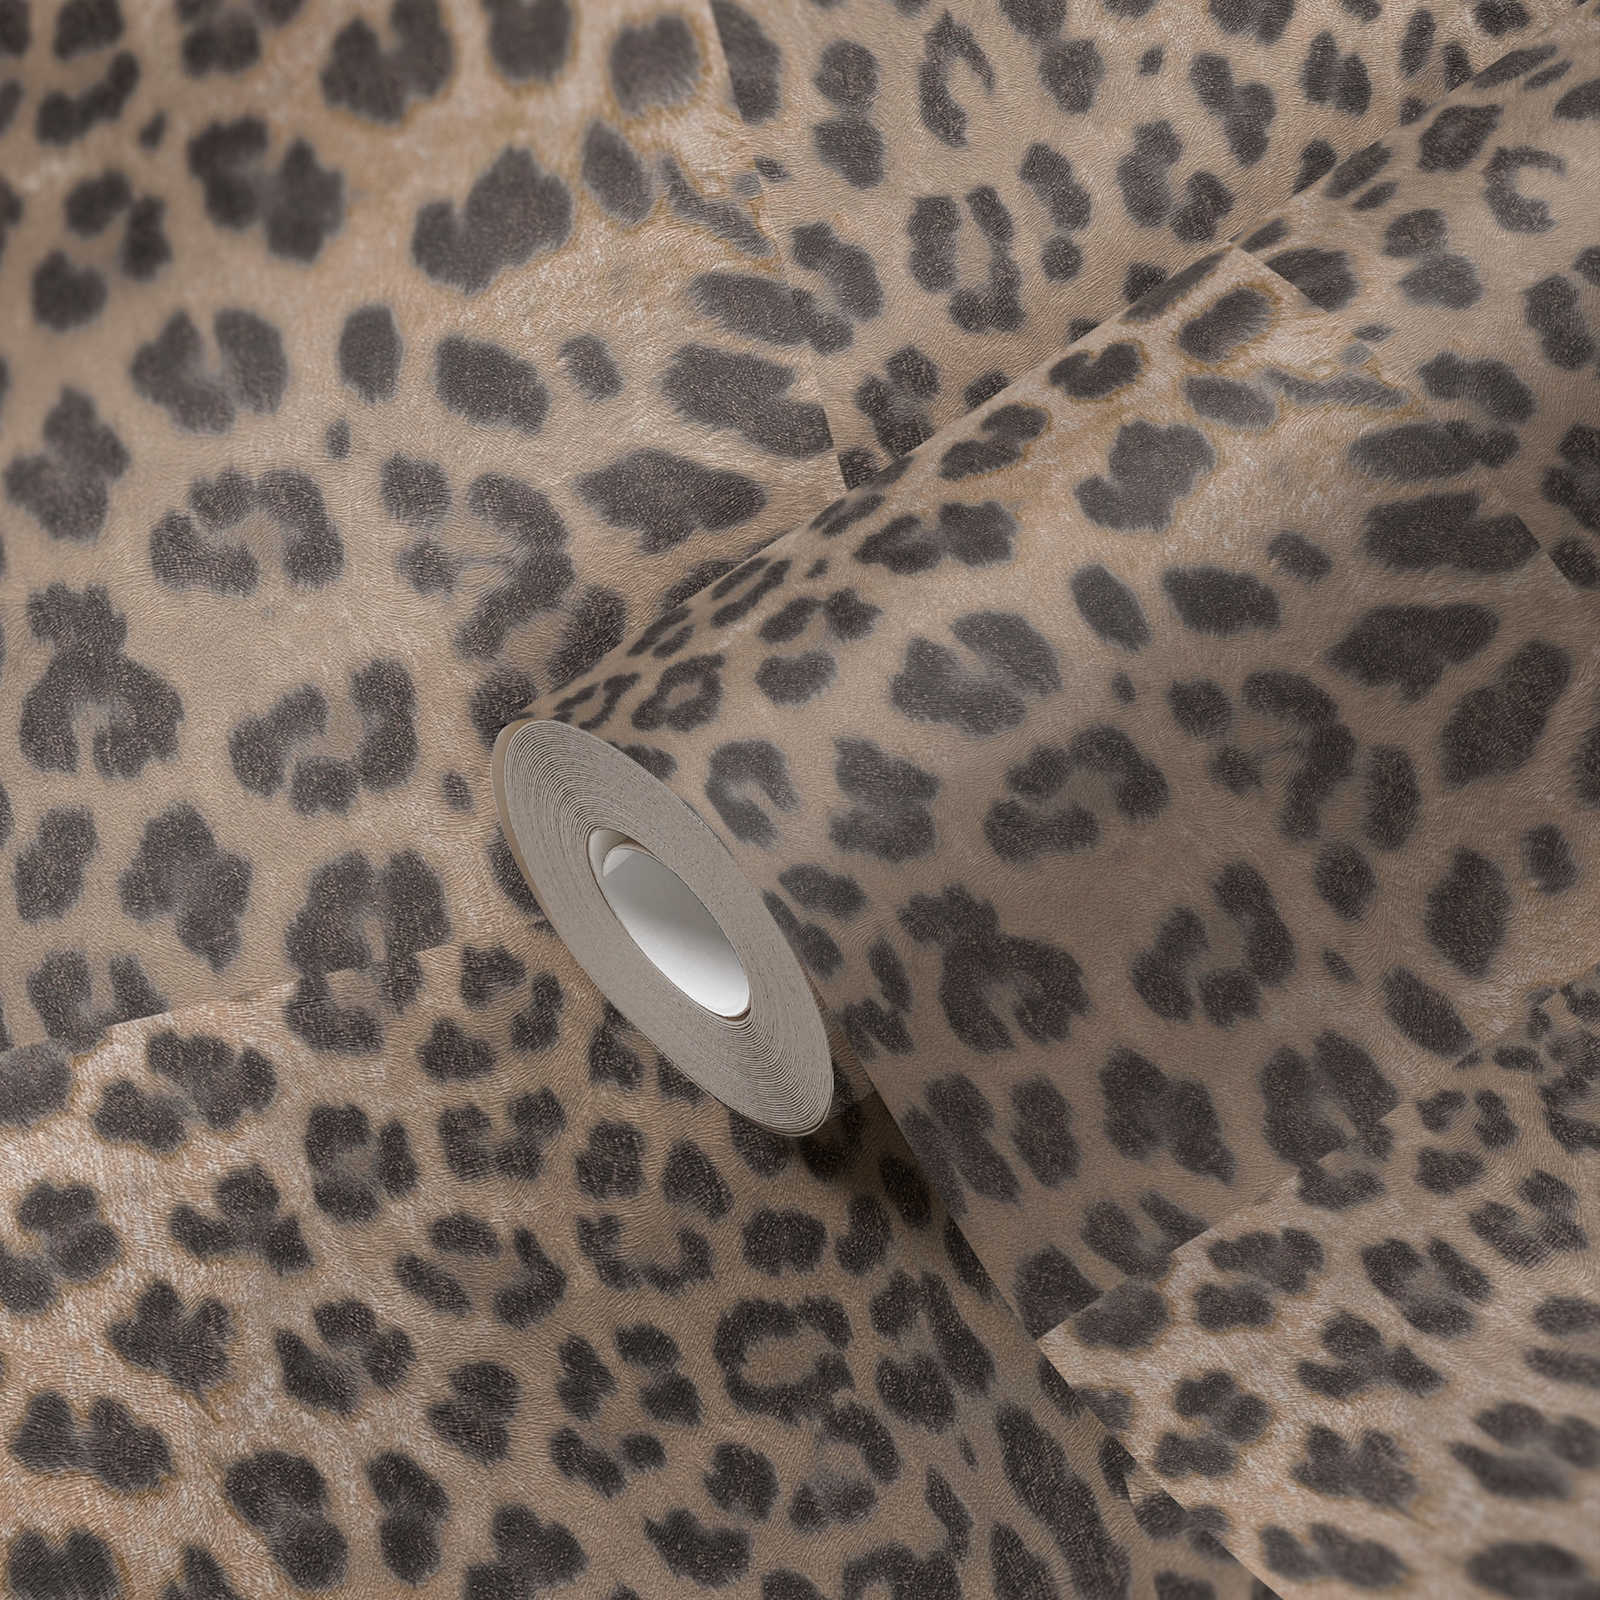             Papel pintado con estampado de animales y leopardo - Beige, Gris
        